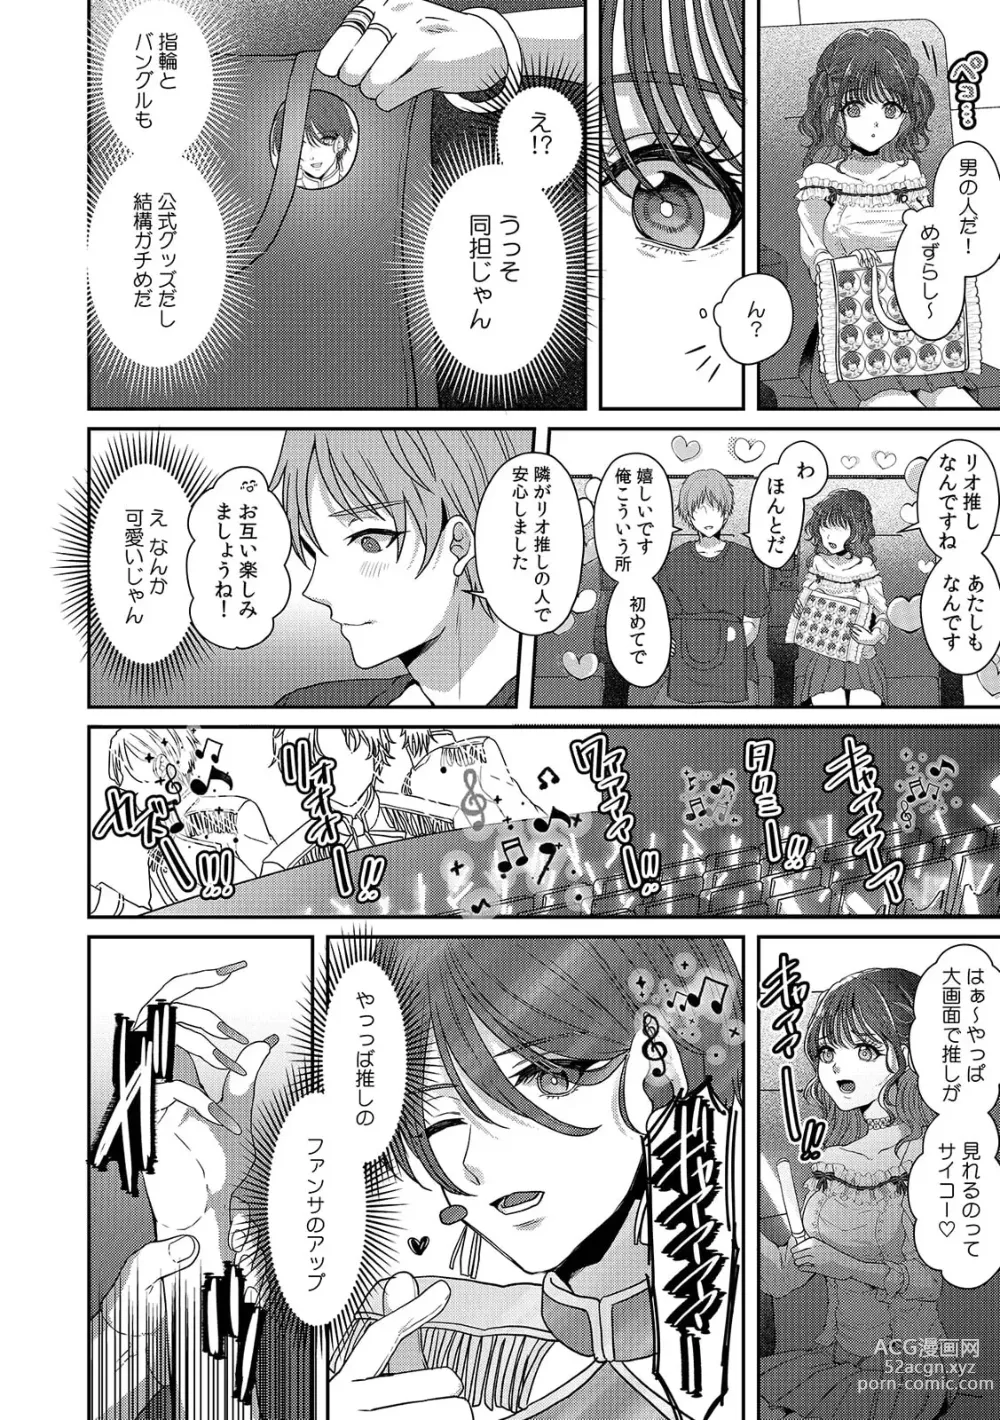 Page 4 of manga Doushite... Muriyari nanoni... Nurechau no...